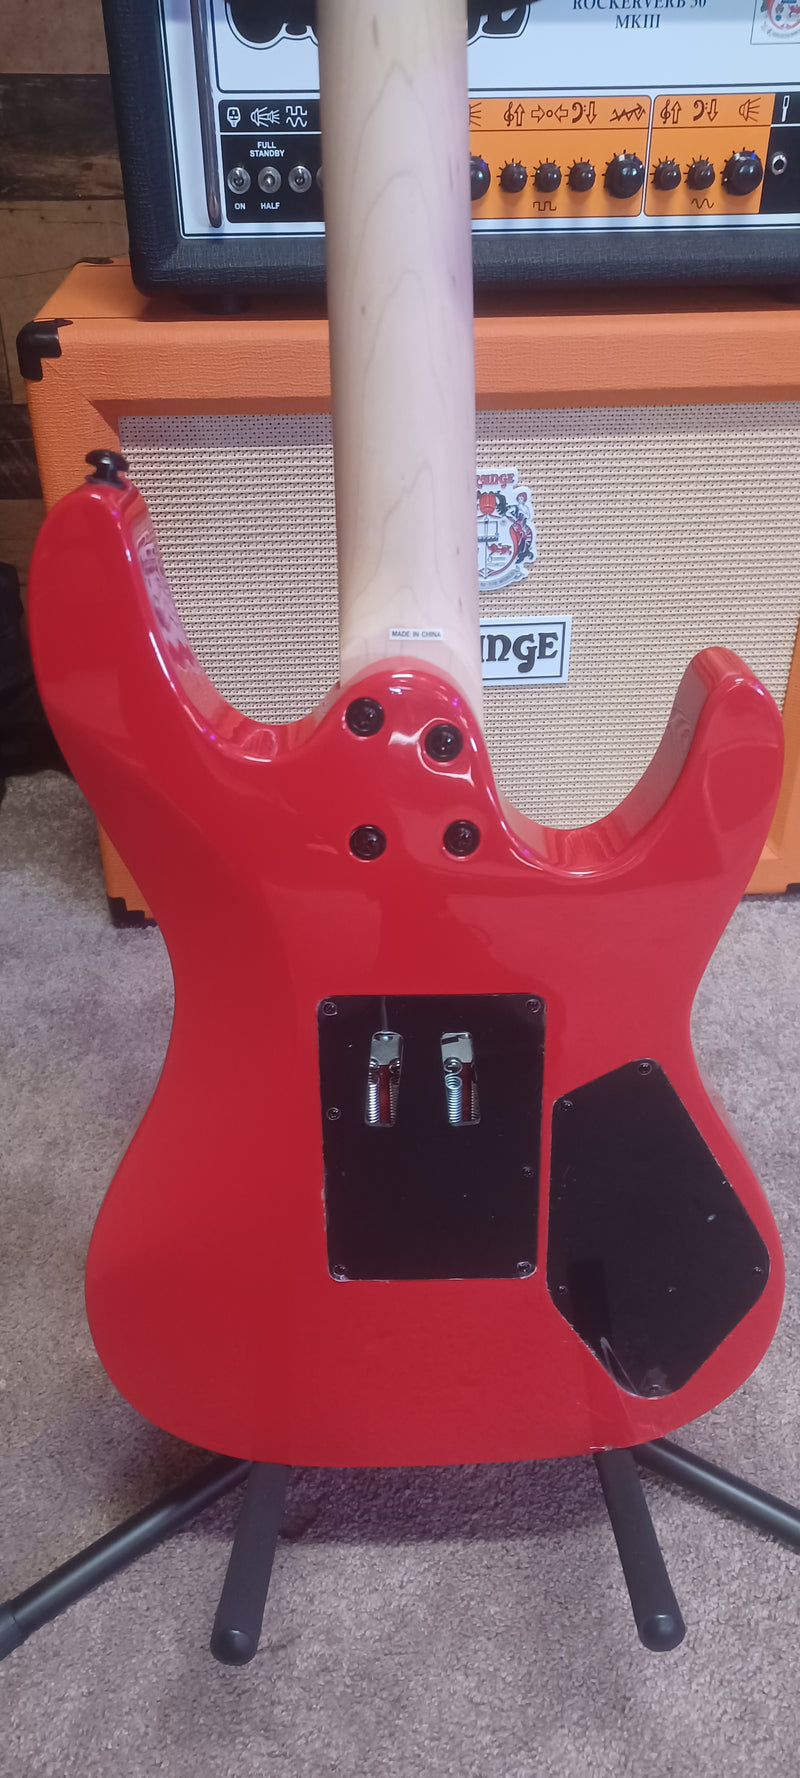 Kramer STRIKER HSS Left-handed Electric Guitar (Jumper Red) (DEMO)